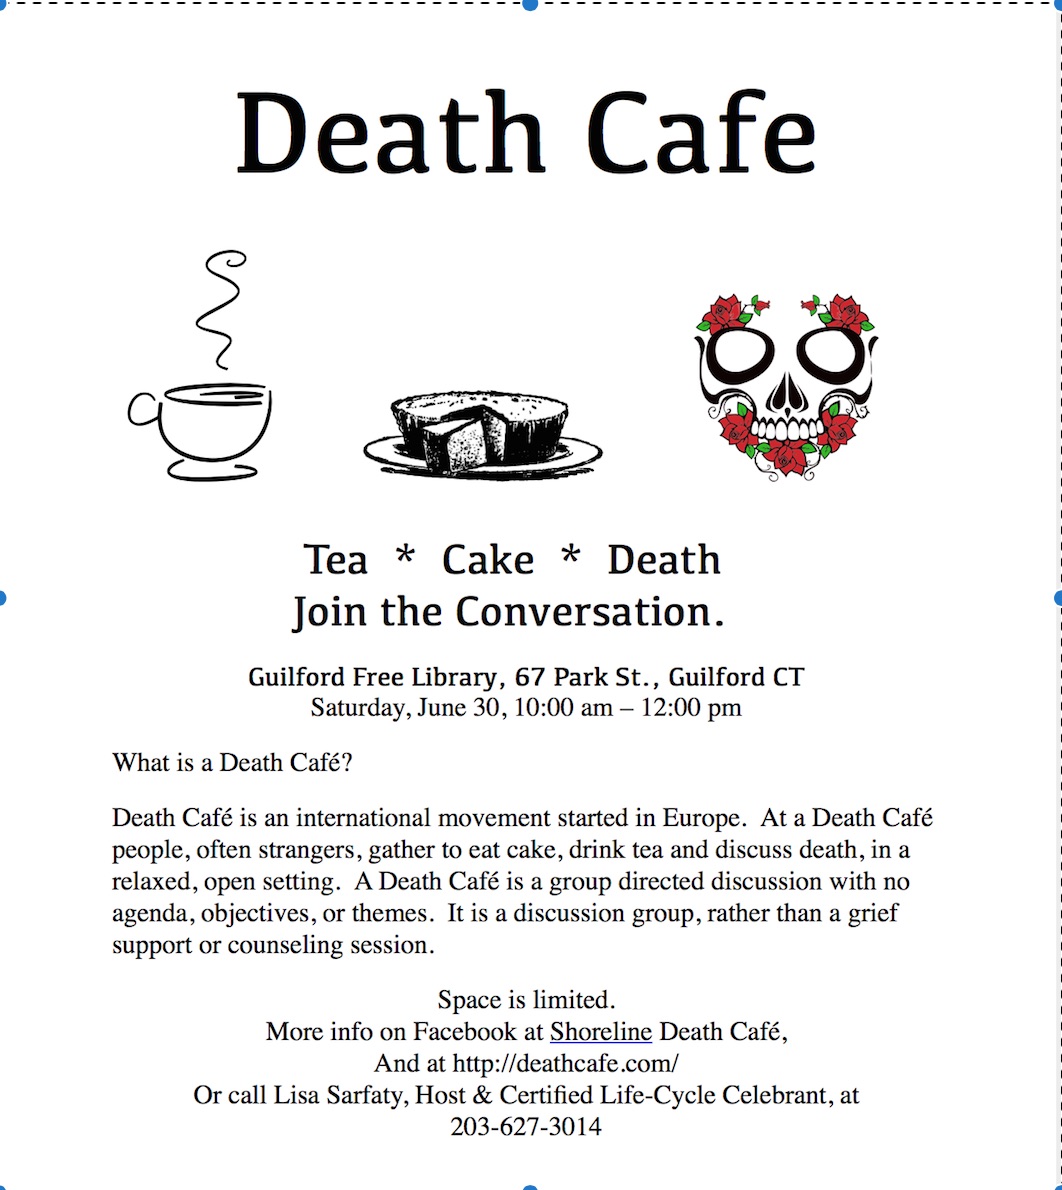 CT Shoreline Death Cafe